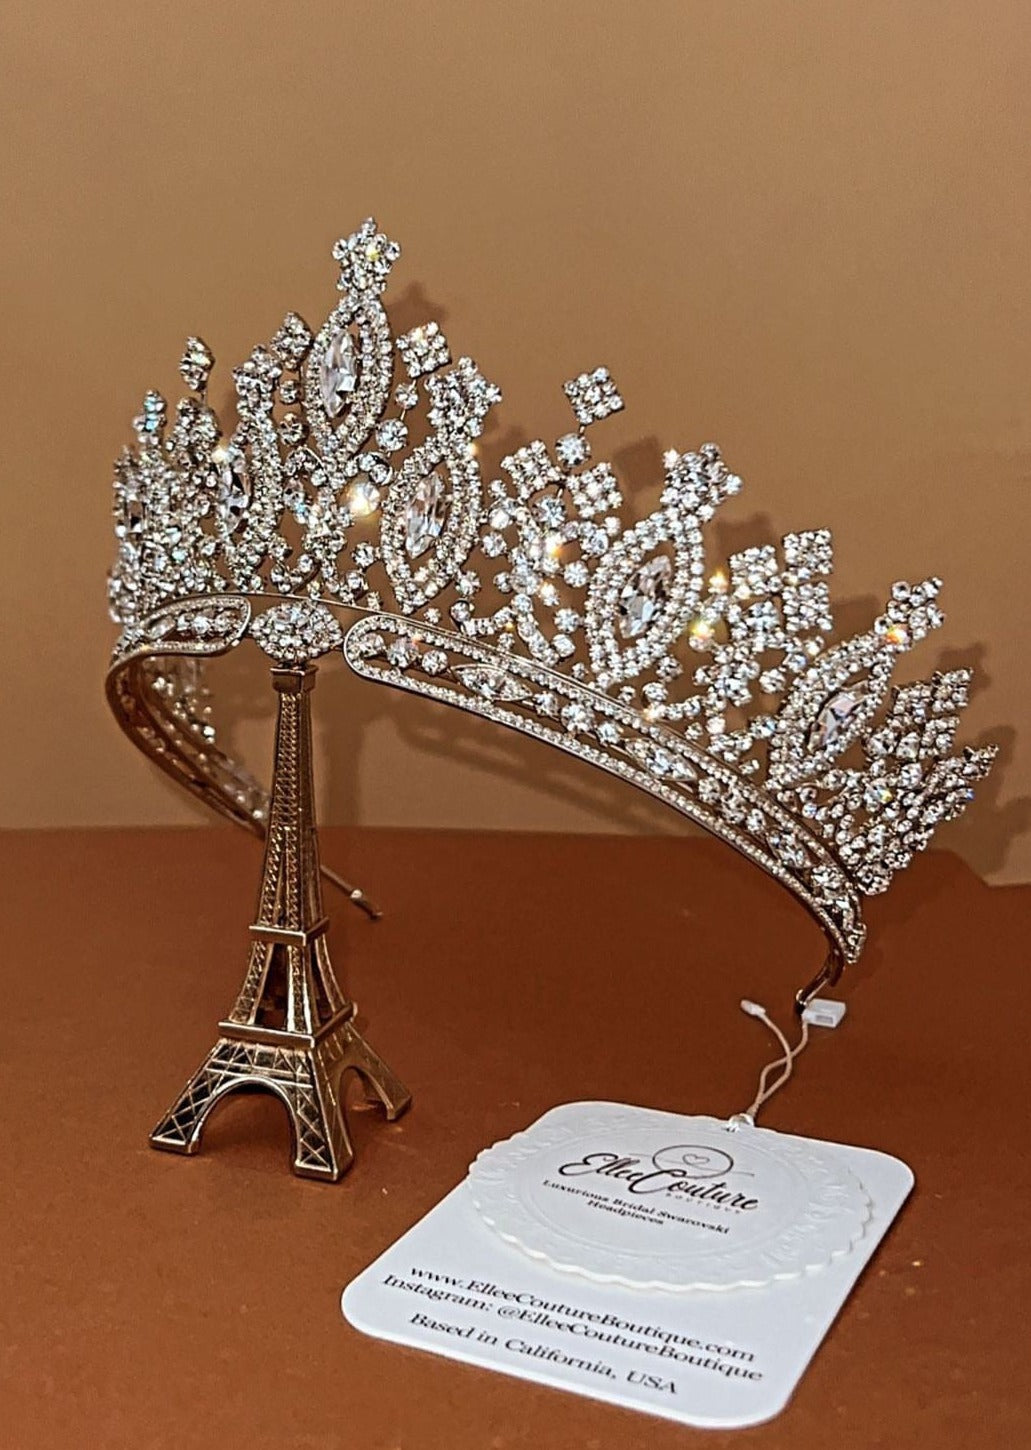 ANASTASIA Swarovski Gorgeous Bridal or Special Occasion Crown